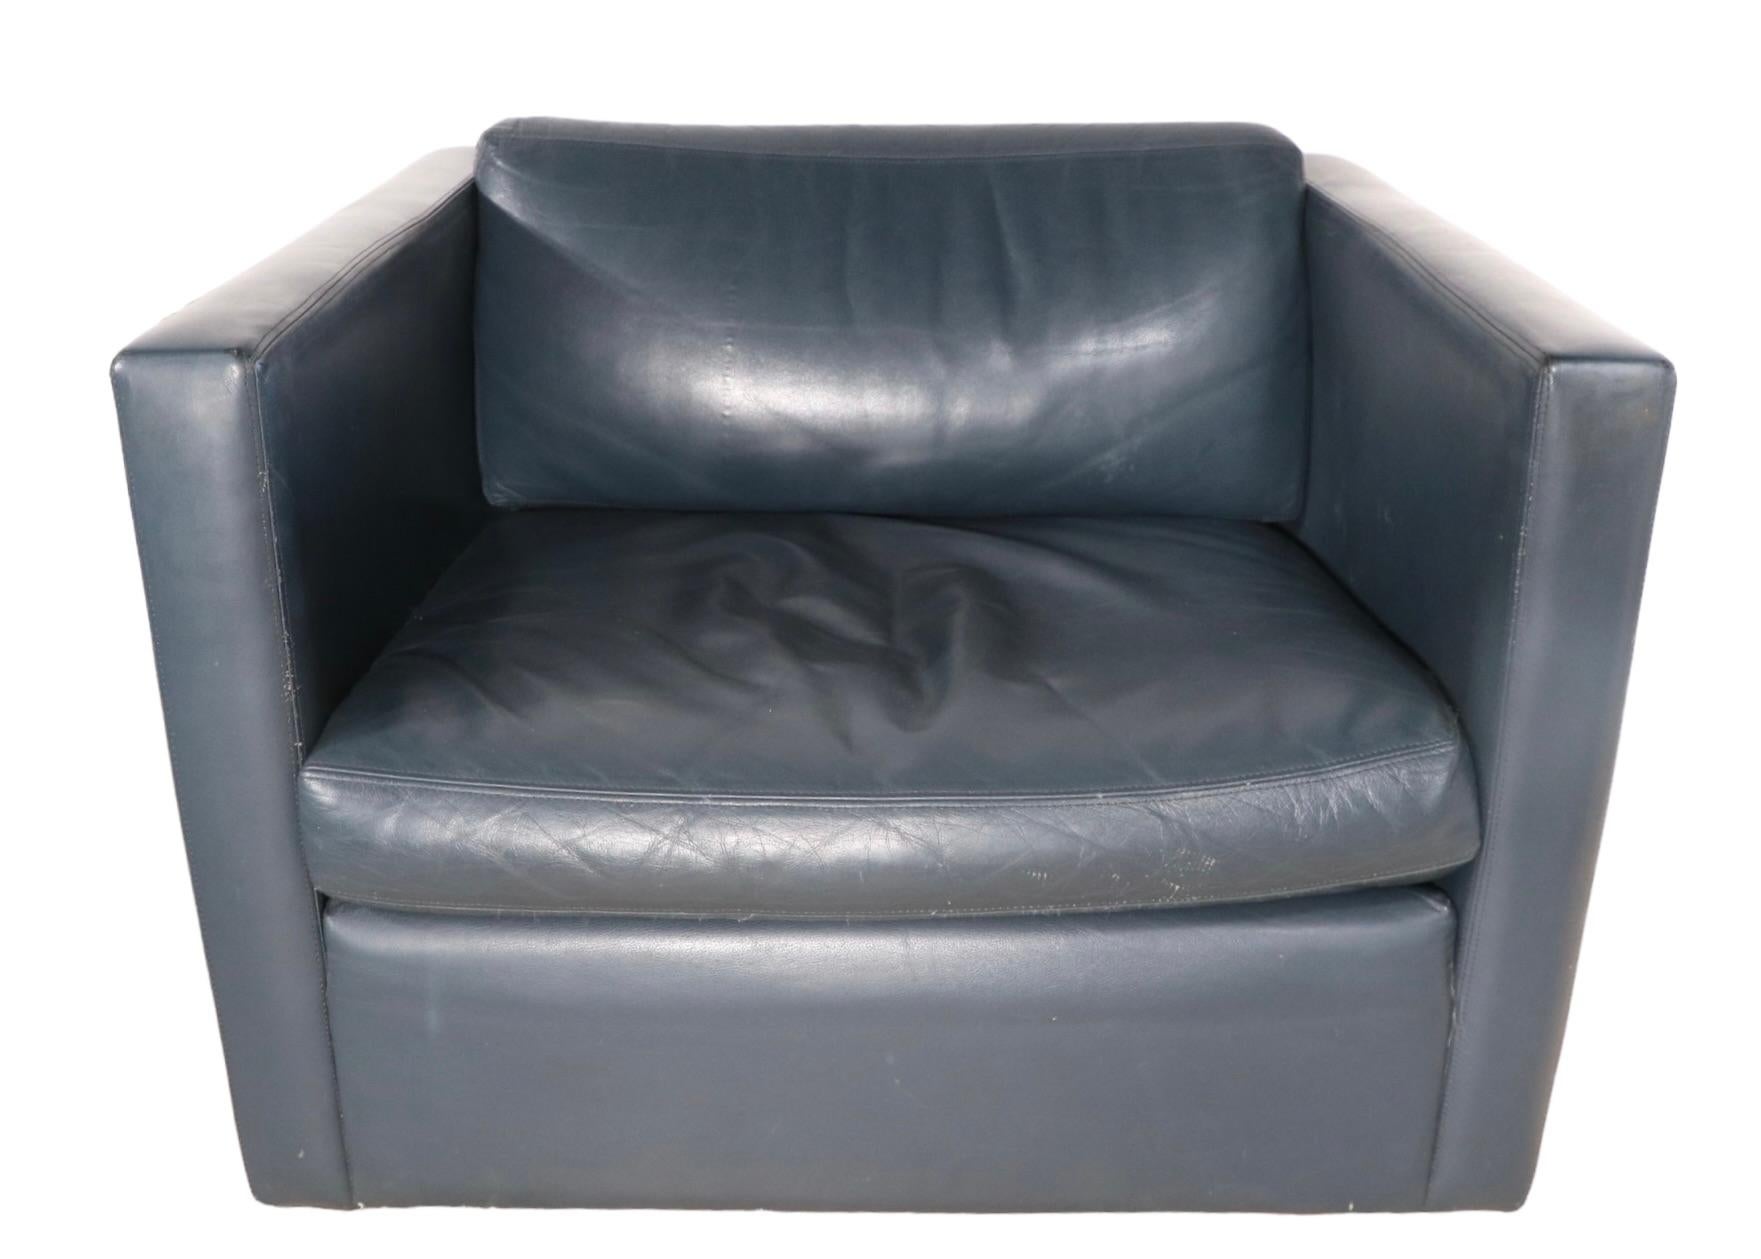 Paire de fauteuils club en cuir conçus par Charles Pfister pour Knoll. Exécuté en cuir bleu grisâtre, d'un ton proche du bleu ardoise. Les chaises sont de couleur assortie, elles apparaissent différentes sur les photos en raison d'un éclairage